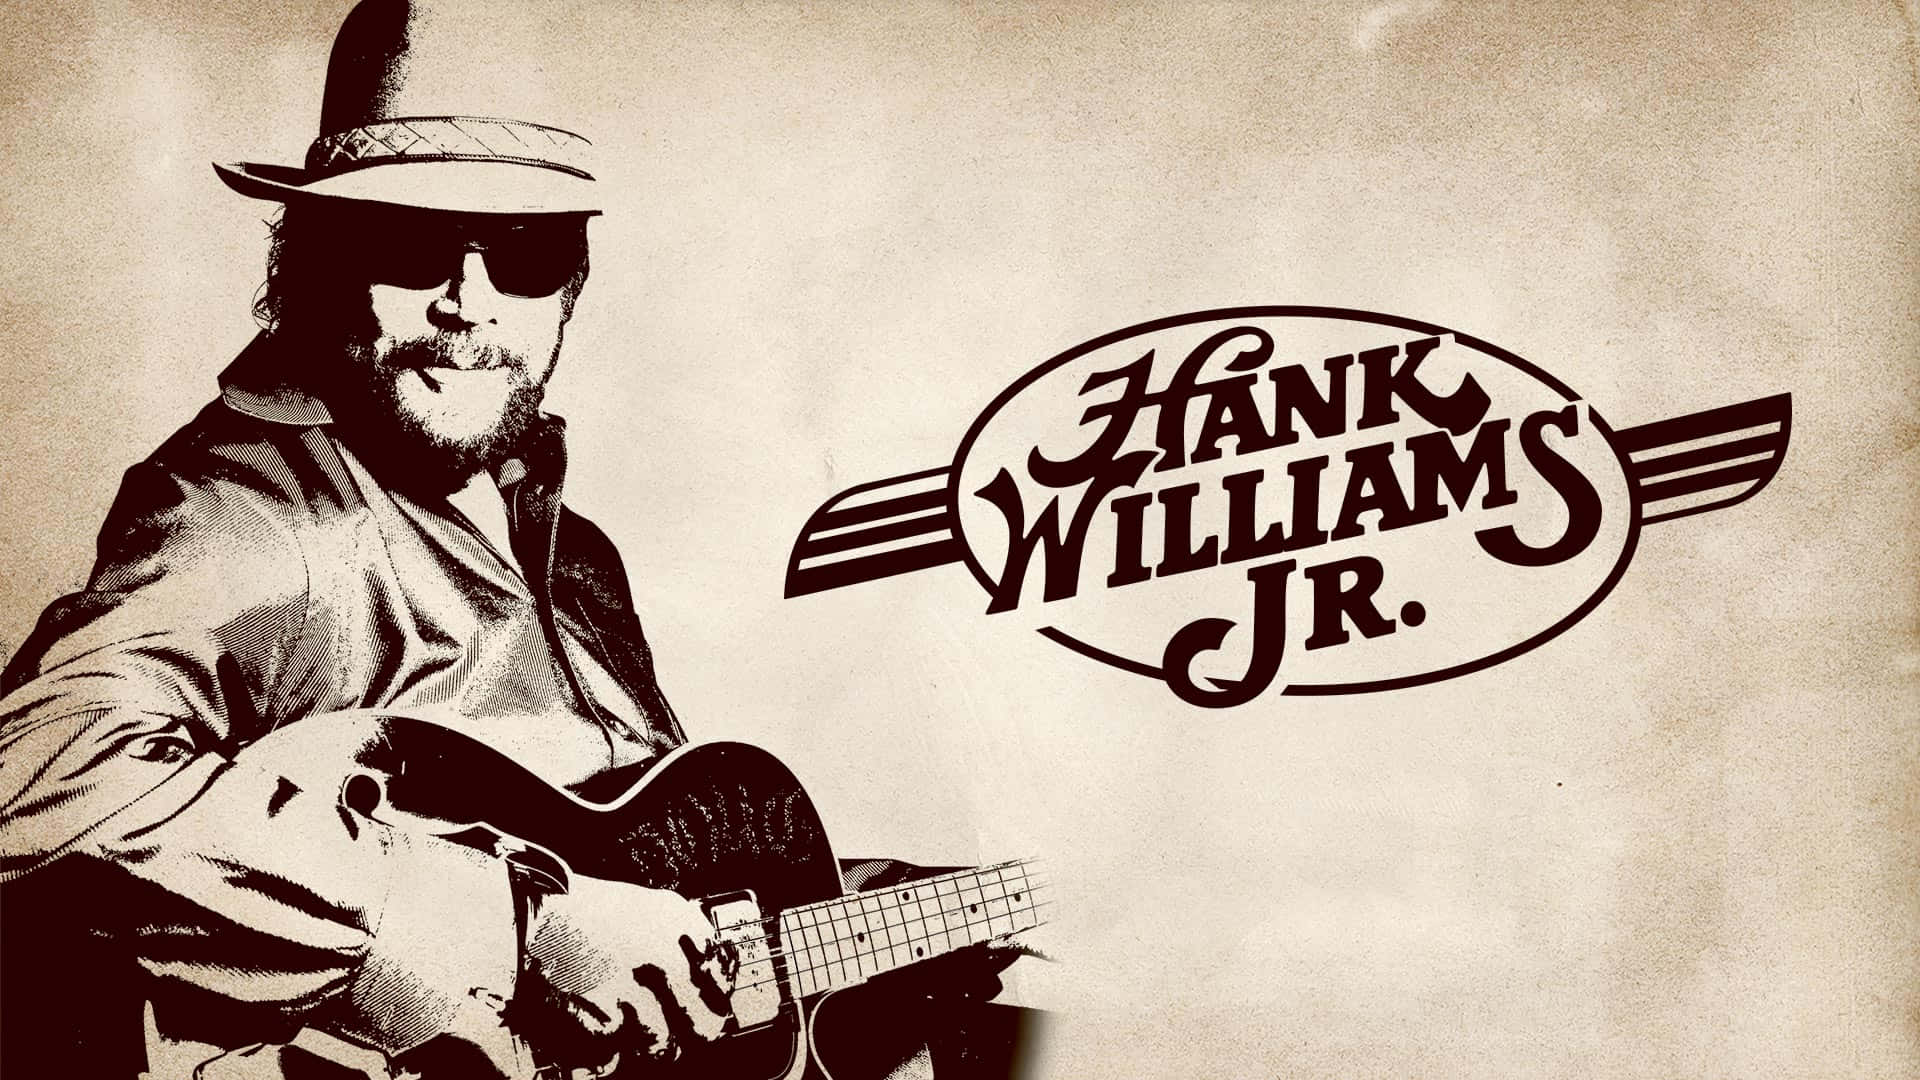 Den legendariske Hank Williams Jr. Wallpaper